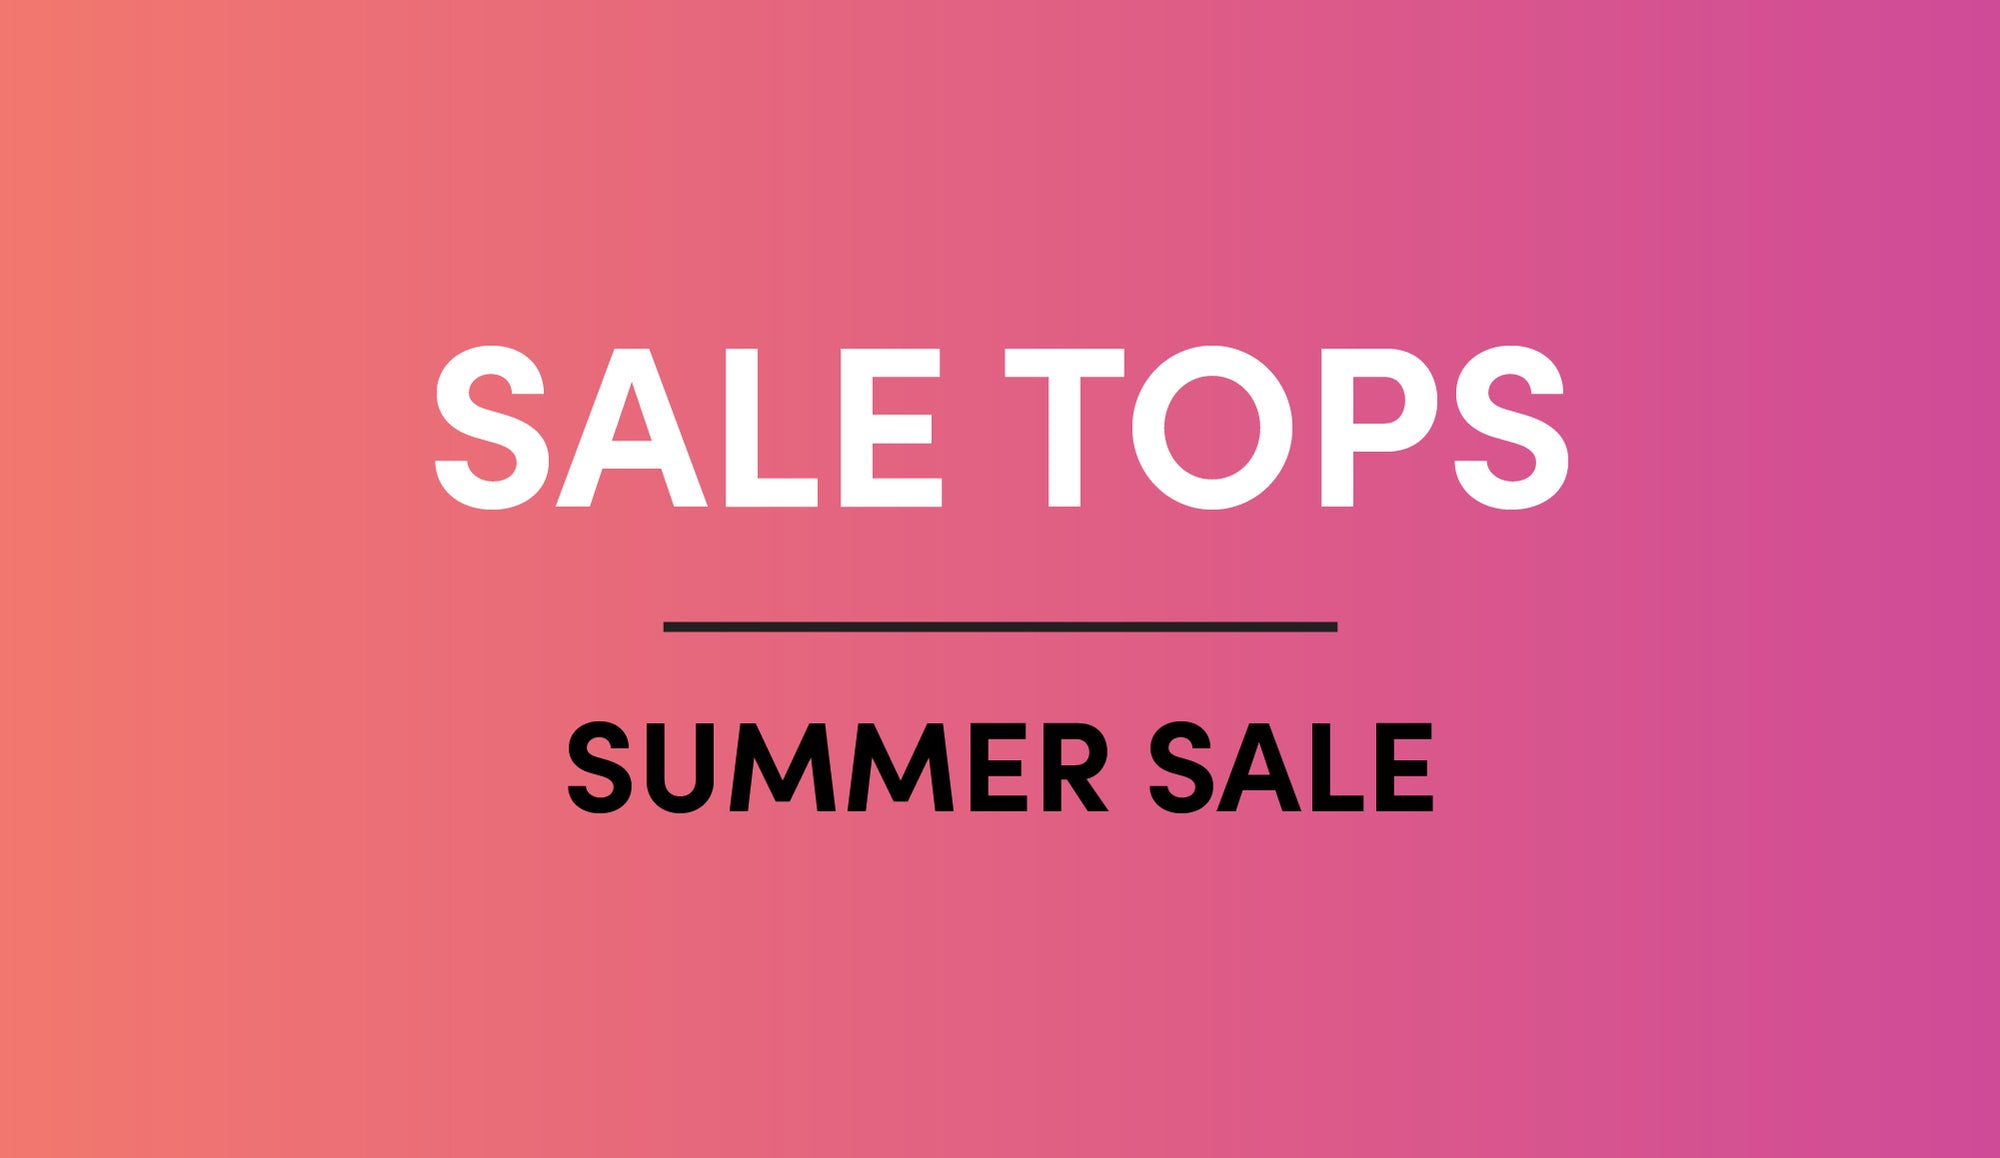 Summer Sale Tops